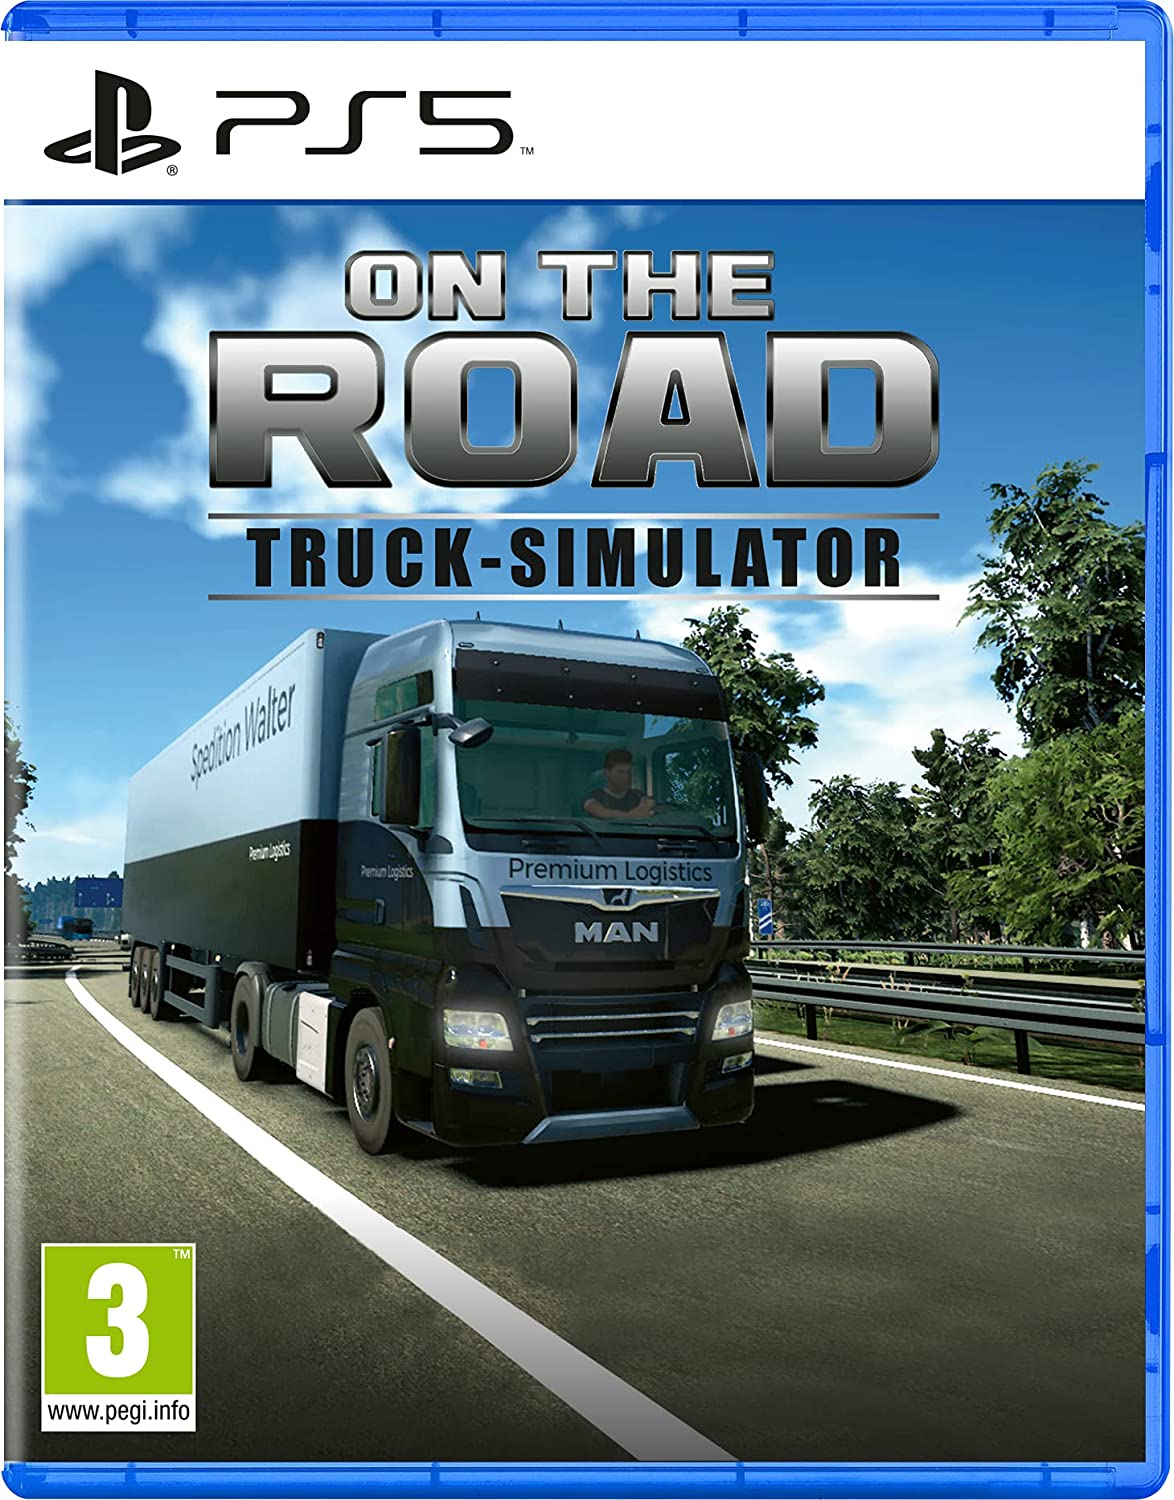 Simulador de caminhão de PS4 e Xbox One